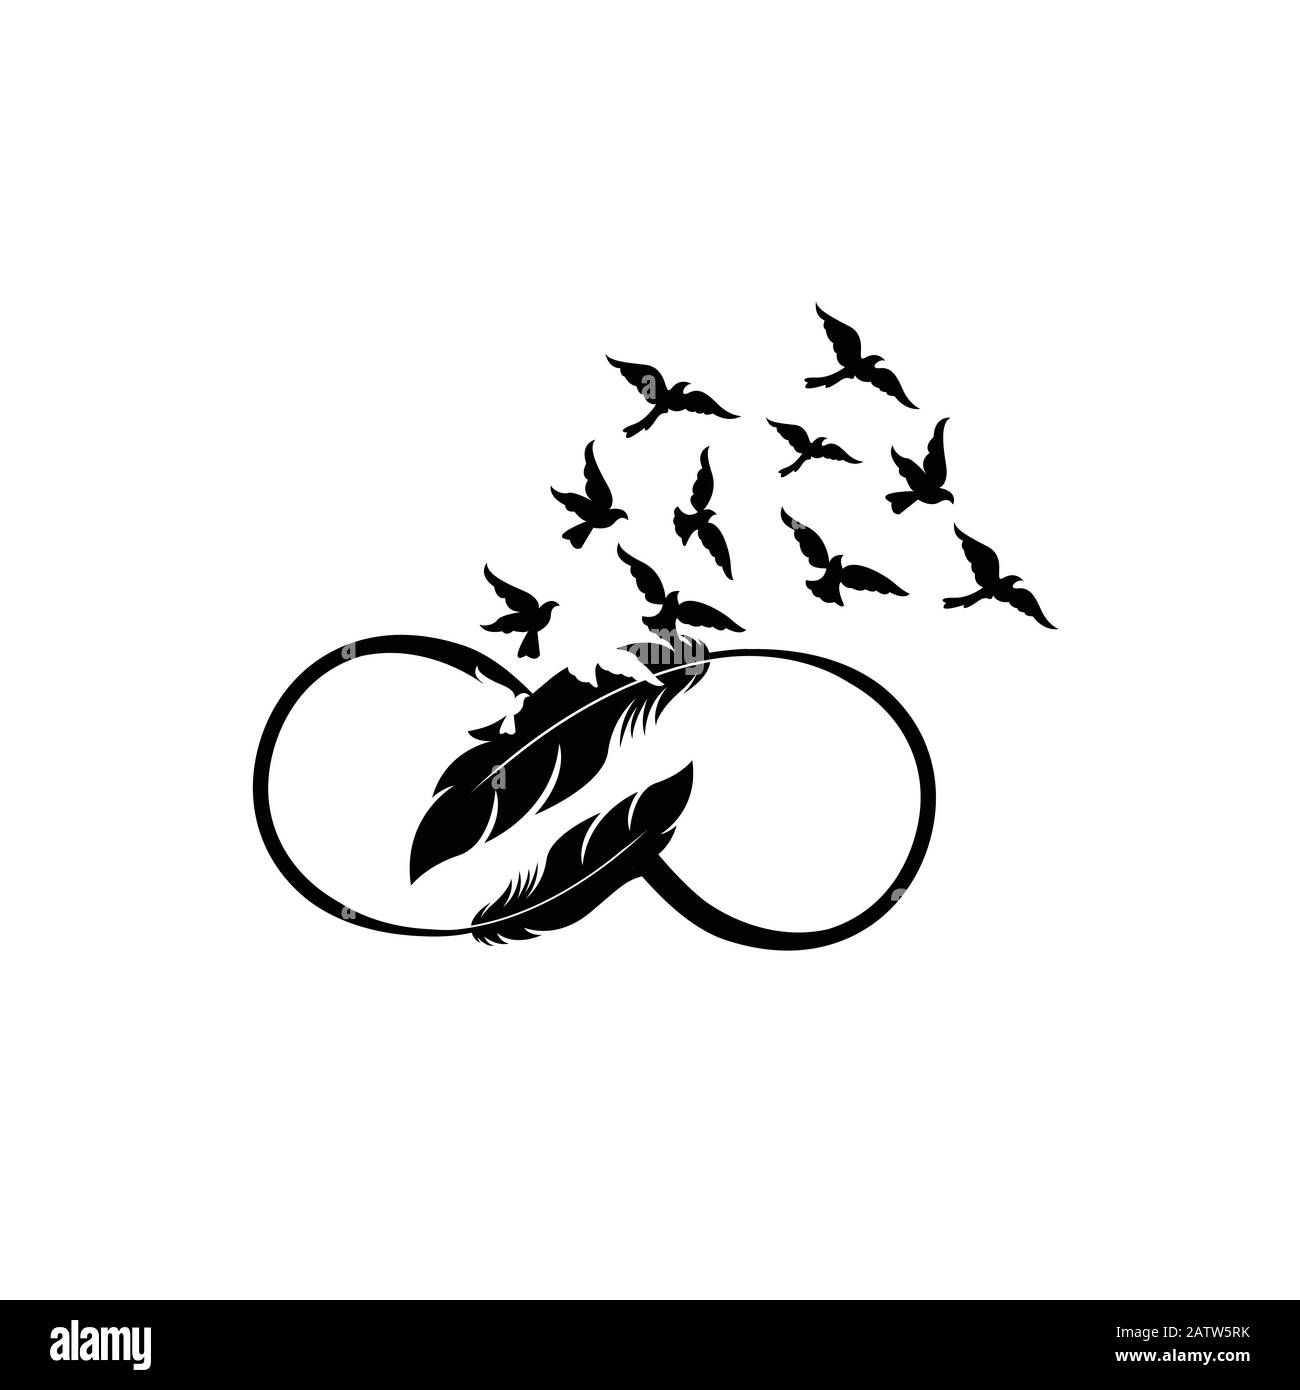 illustration vectorielle de plumes stylisées avec silhouettes de troupeaux d'oiseaux Illustration de Vecteur